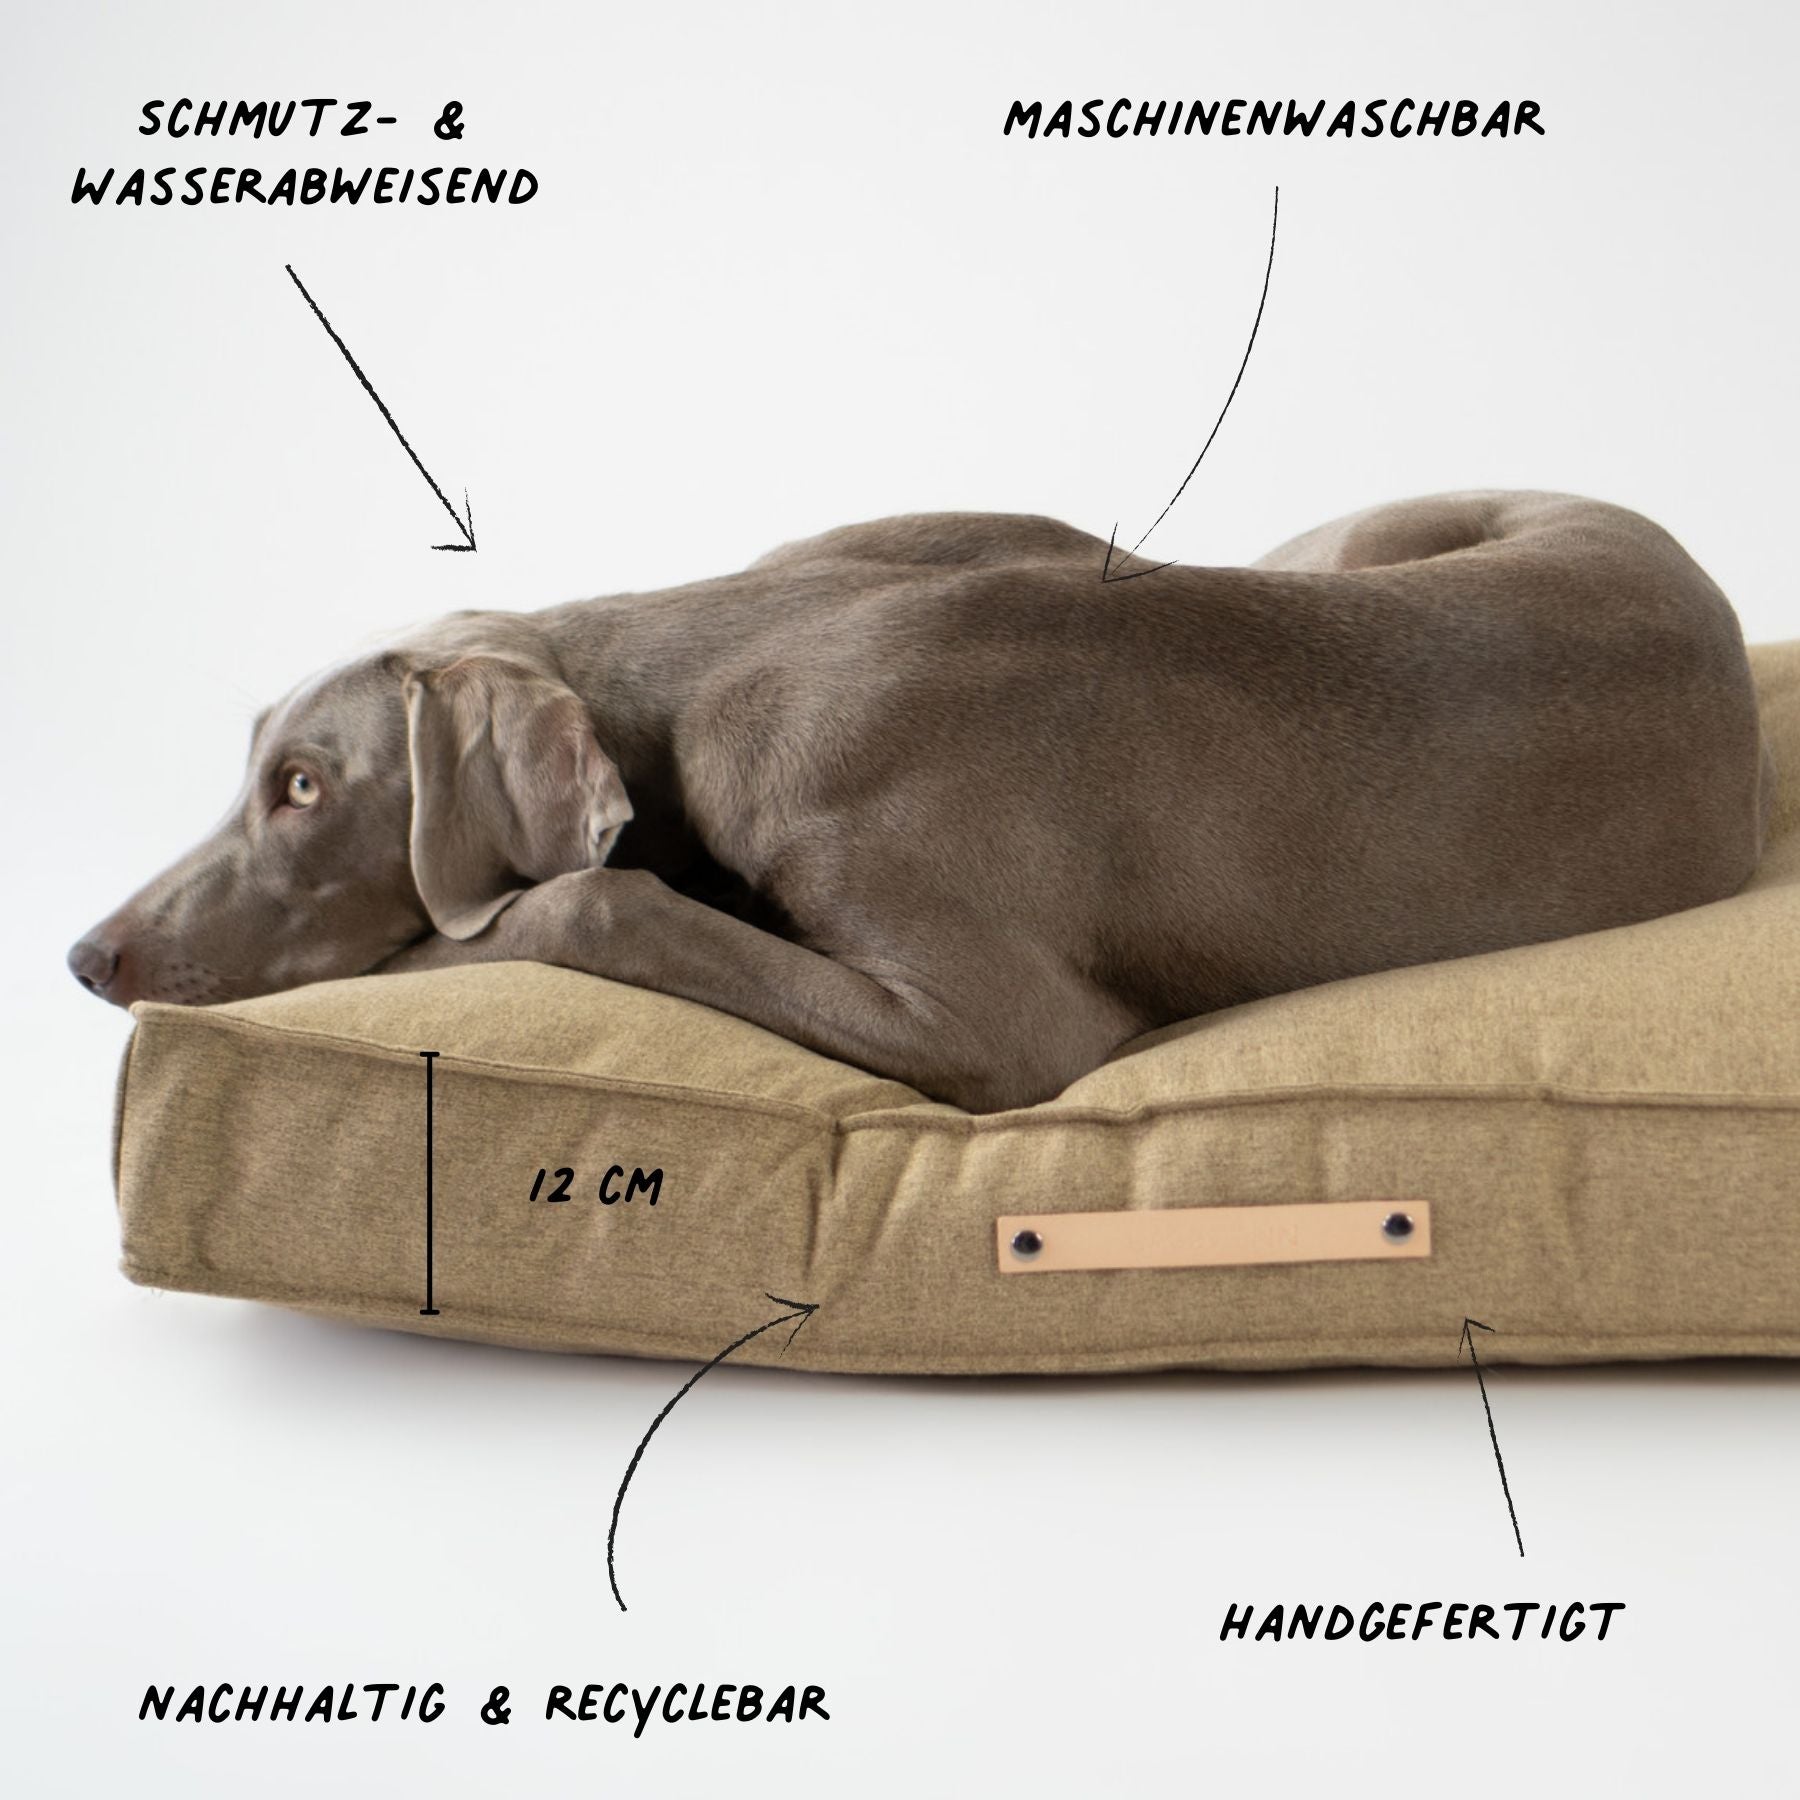 Dieses Bild zeigt ein Hundekissen im nordischen Stil von LABBVENN. Es heißt Møvik und ist in drei Farben und drei Größen erhältlich. Das Bett wird für deinen Hund in sorgfältiger Handarbeit hergestellt, ist nachhaltig und sehr luxoriös. Dies ist die Farbe Biscuit-Braun.